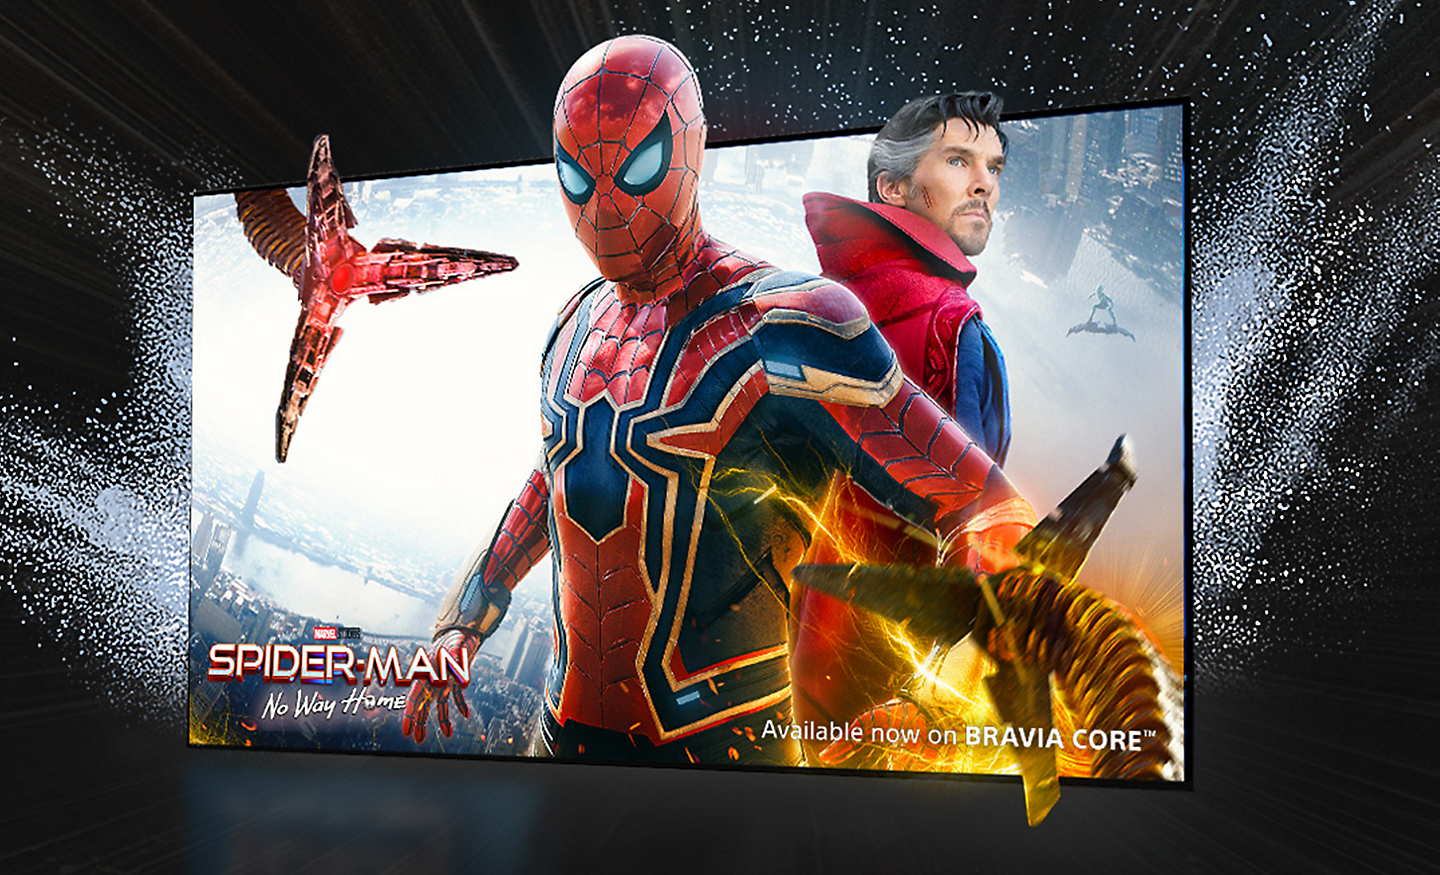 Pantalla de un televisor en la que se muestra la película SPIDER-MAN: Sin camino a casa con Spider-Man saliendo de la pantalla